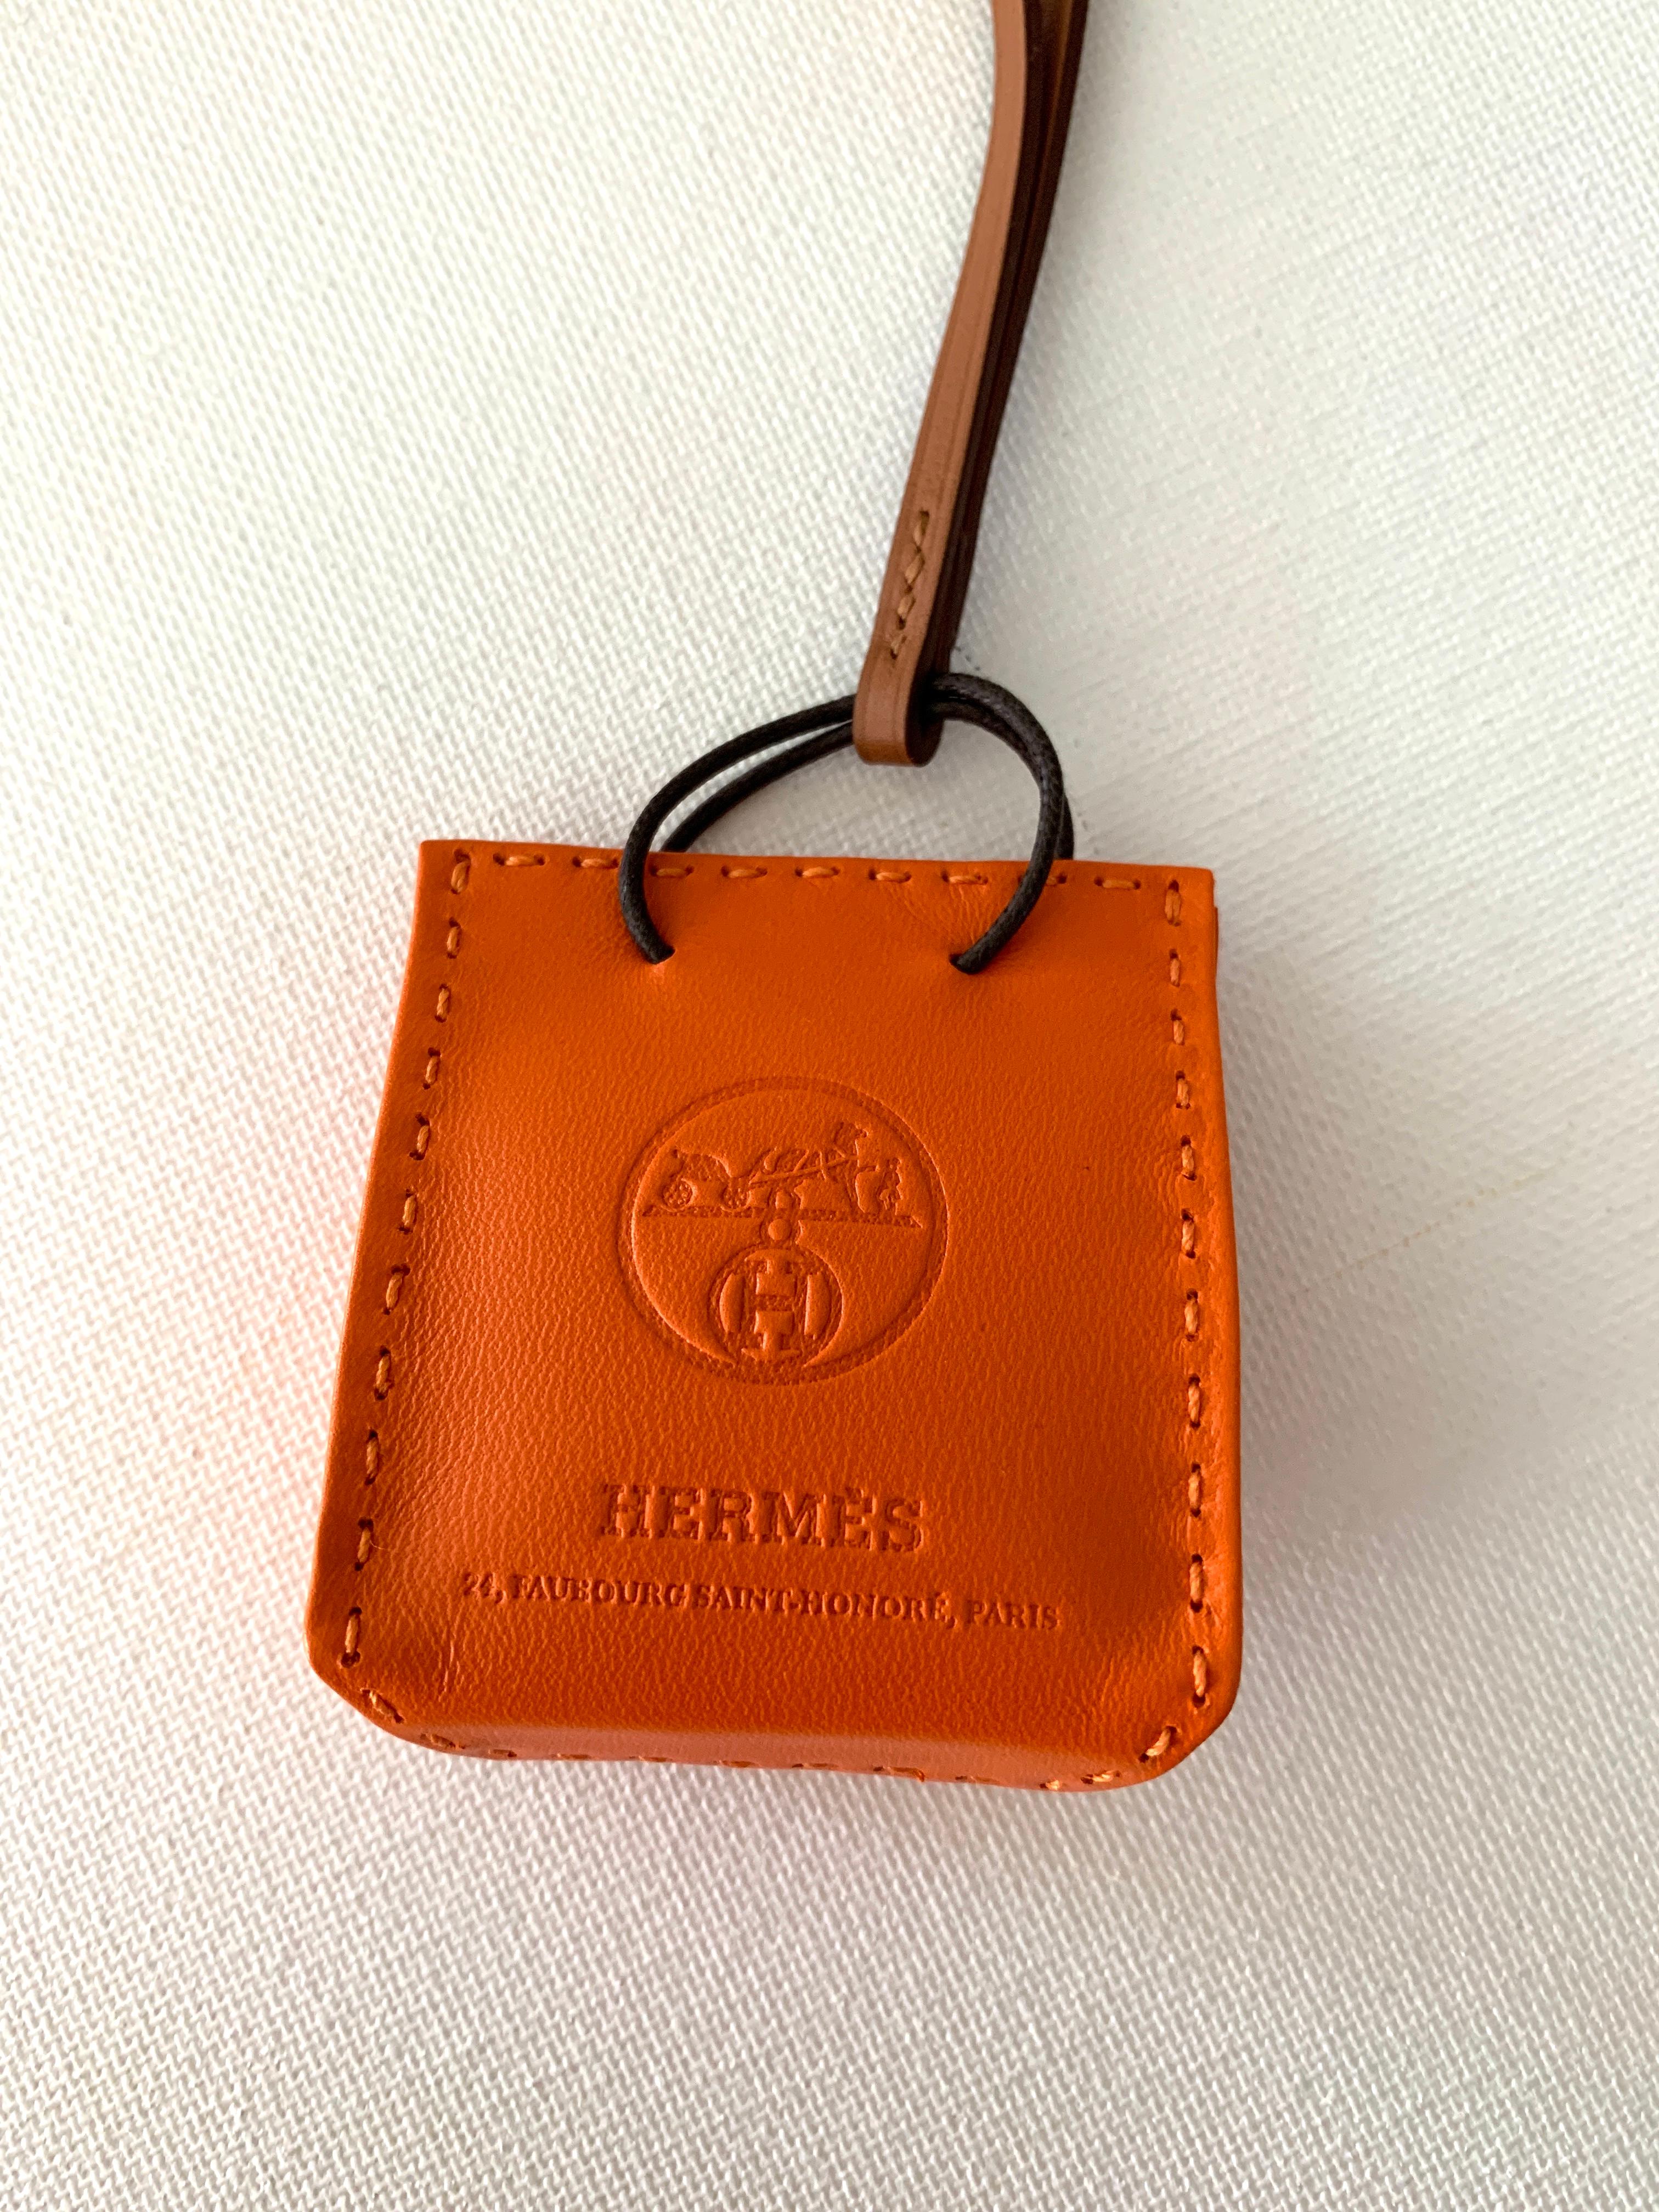 Women's or Men's Hermes Shopping Bag Orange Leather Charm for Birkin For Sale